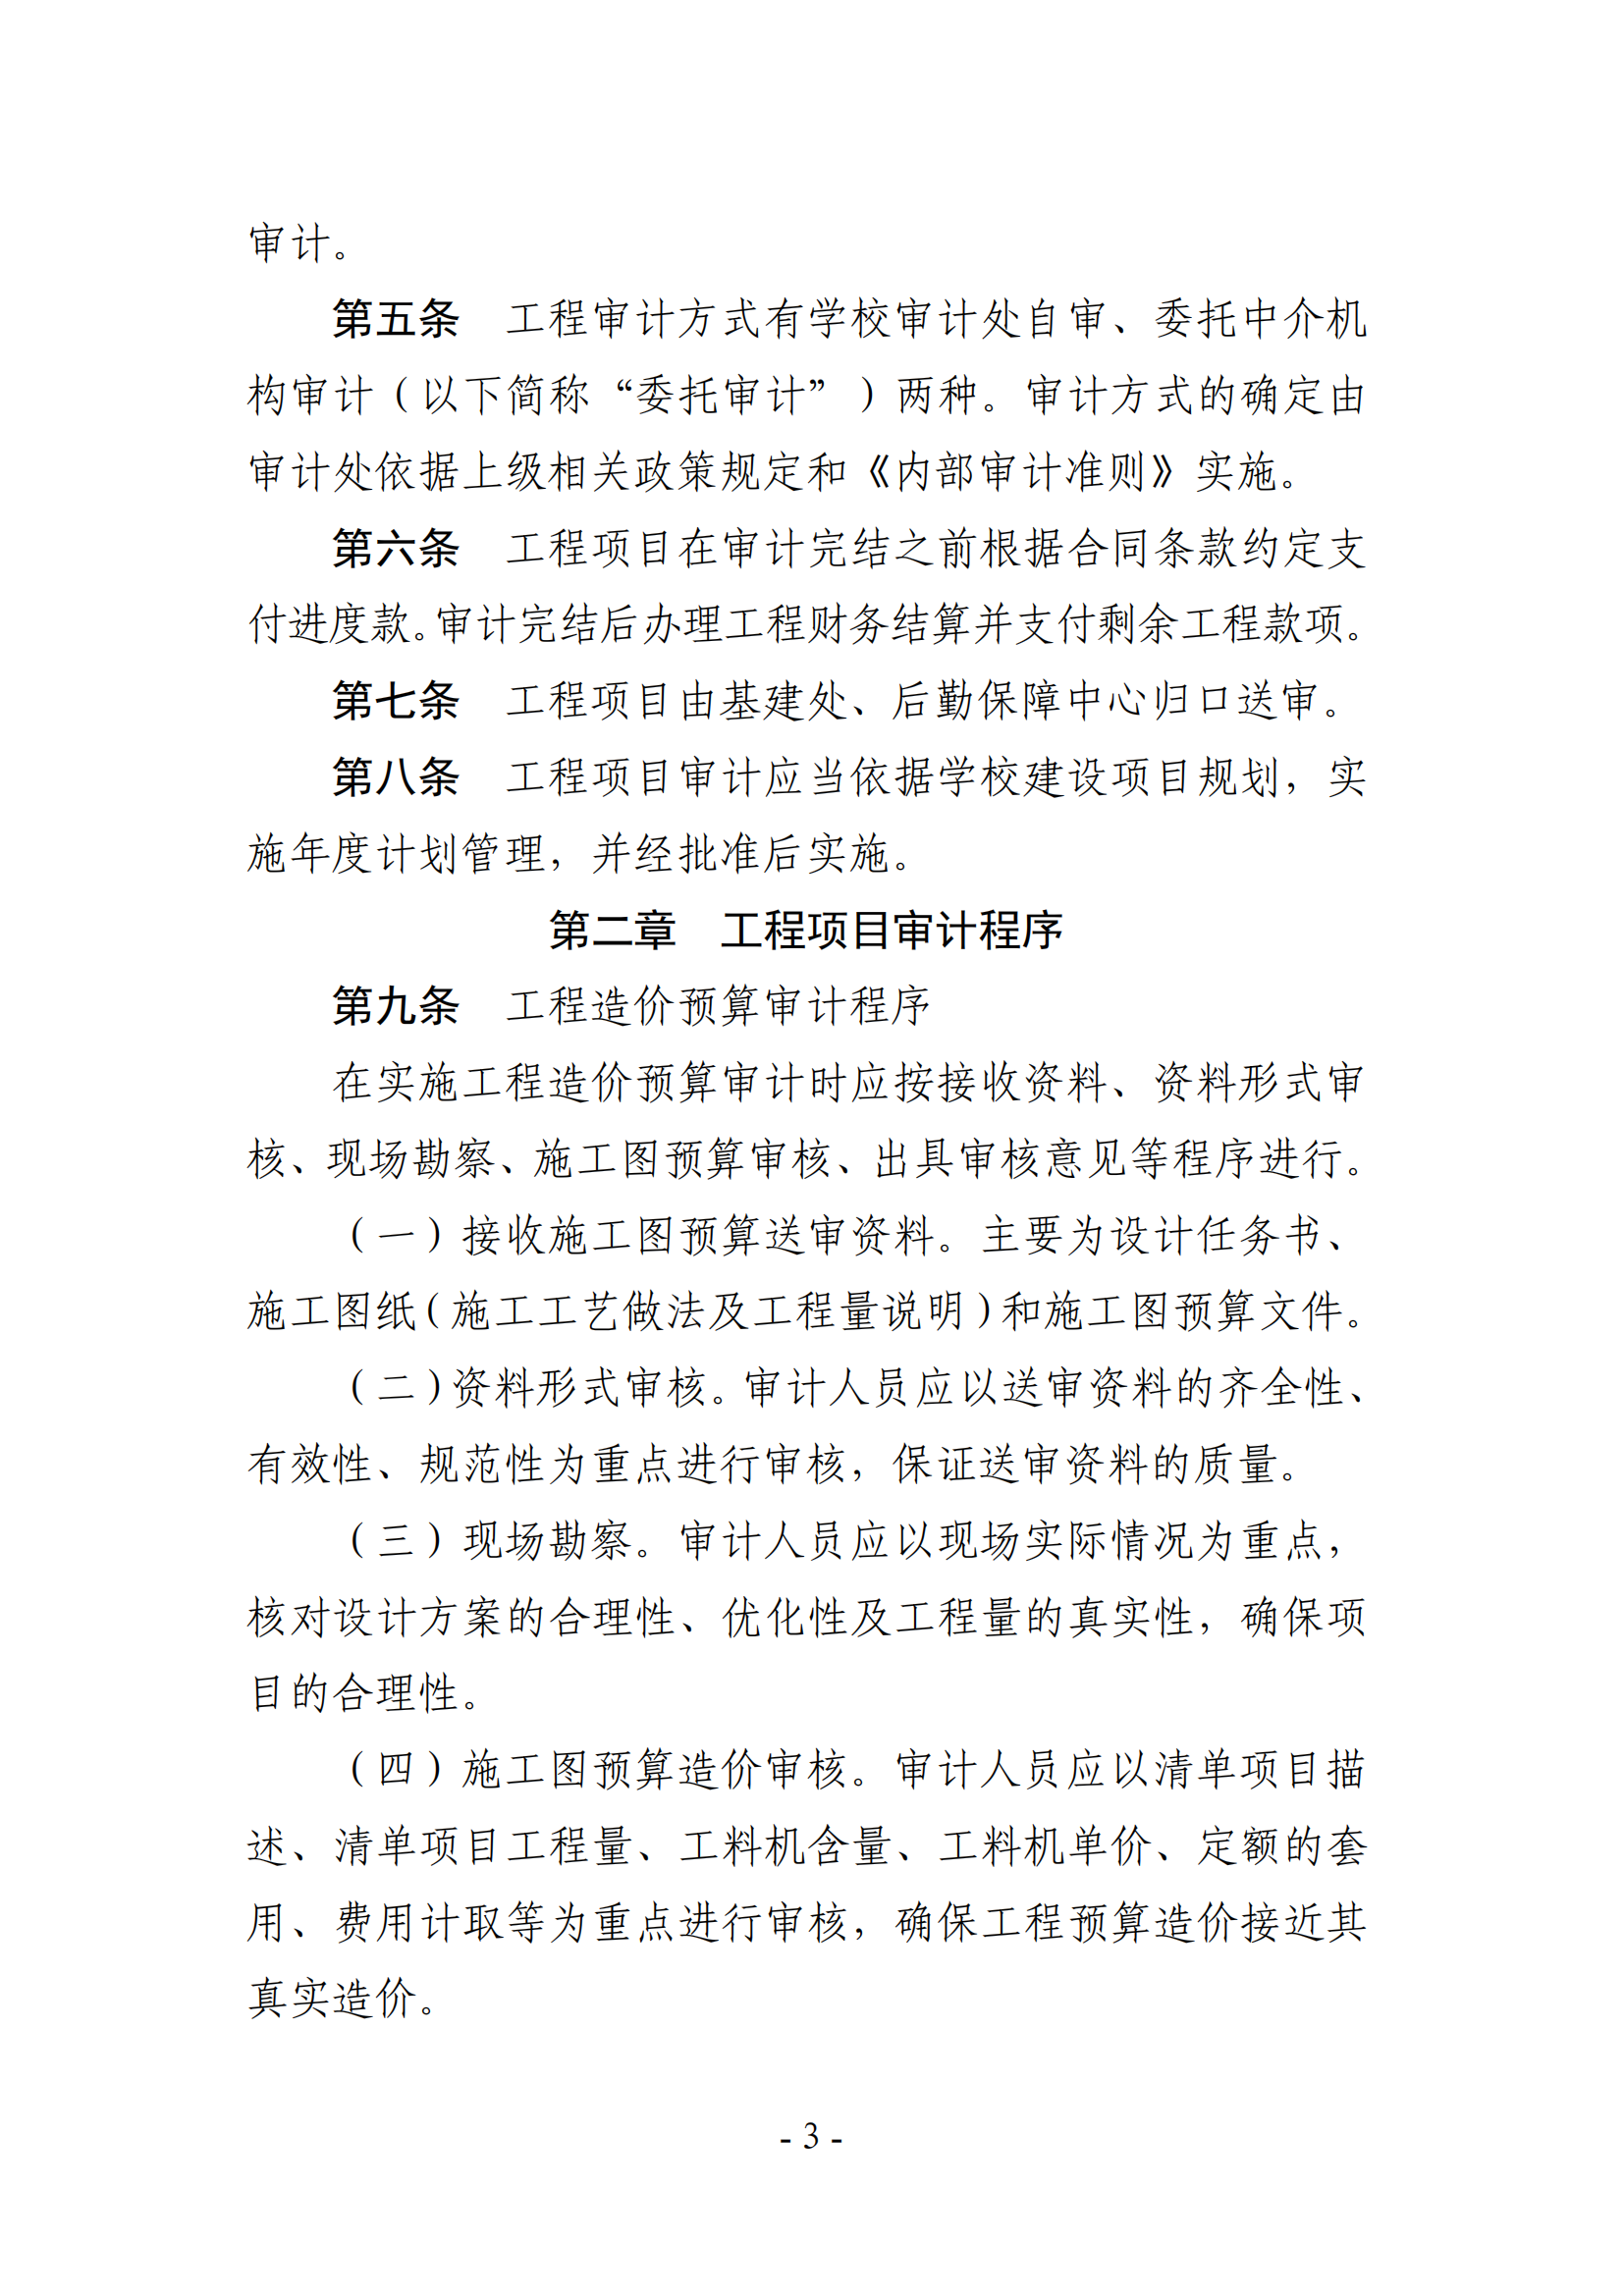 关于印发《湖南农业大学基建、修缮工程项目审计实施办法》的通知-正文_02.png